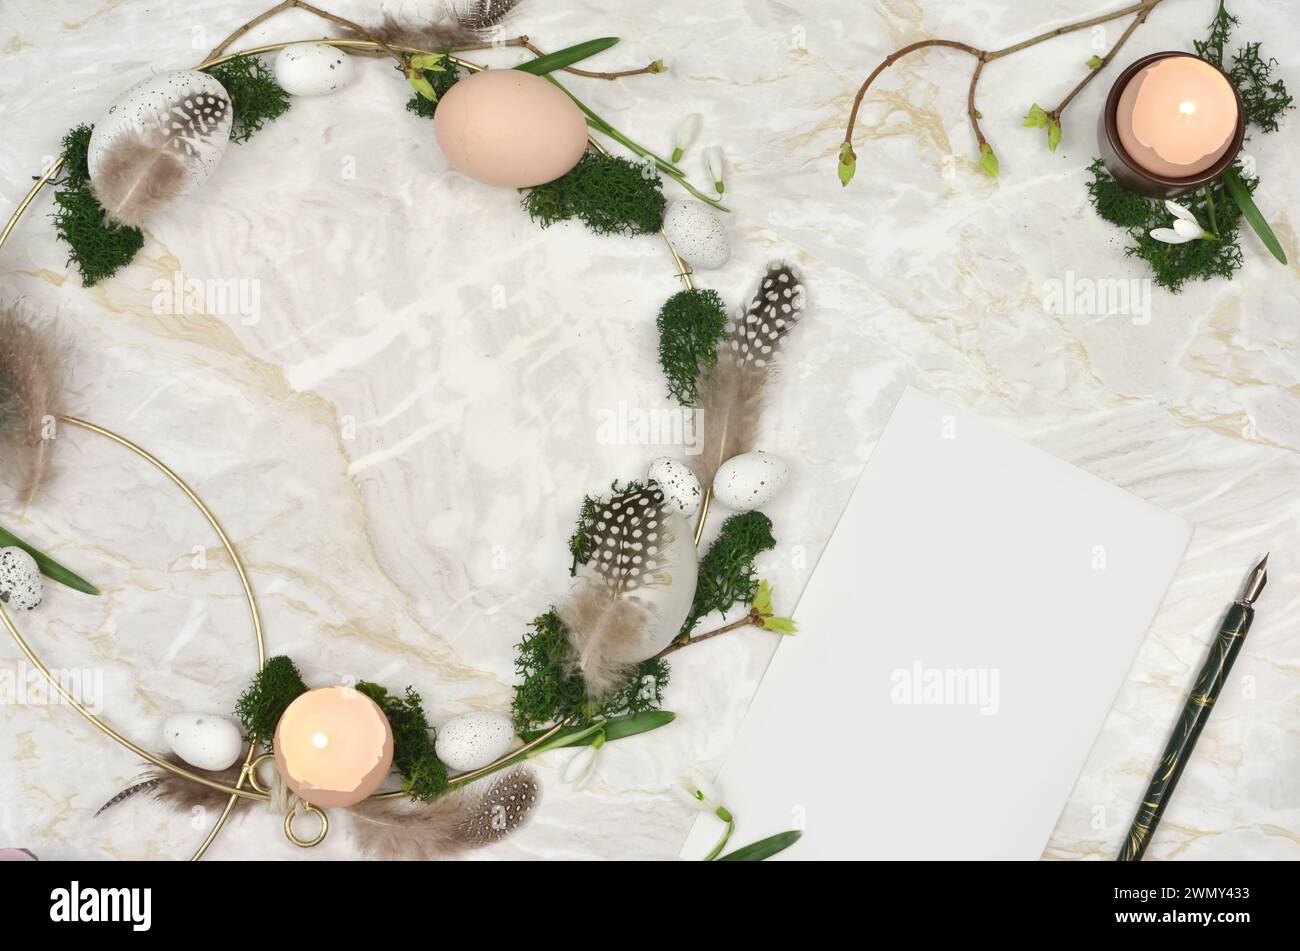 Corona di Pasqua fatta a mano su un tavolo di marmo con foglio di carta bianco da riempire. Uova, gusci d'uovo, candele, muschio - vista dall'alto. Foto Stock